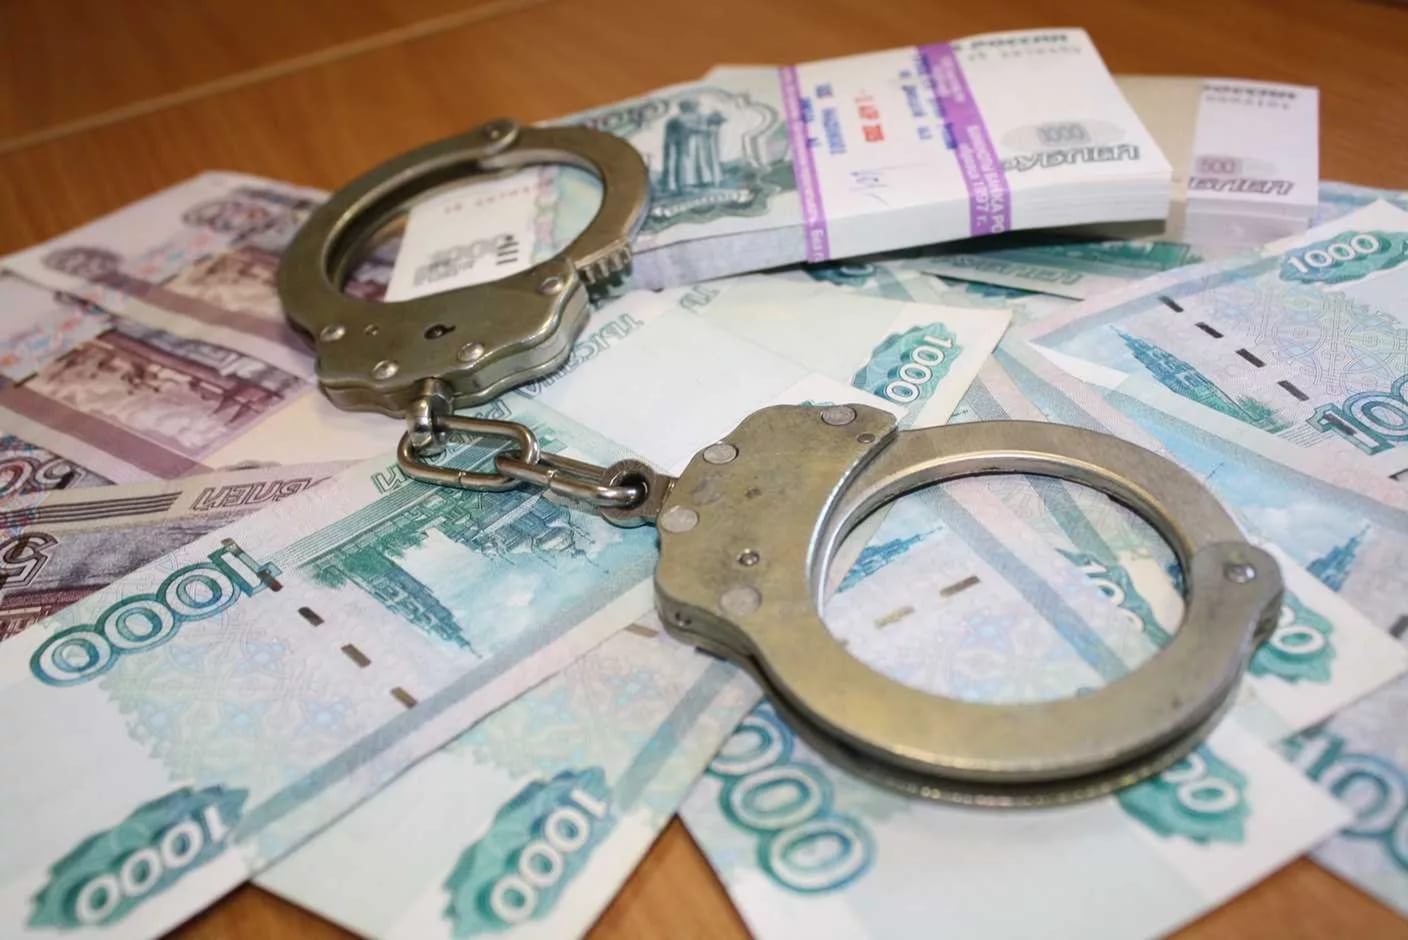 Двое неизвестных украли у частного предпринимателя около 3 млн.руб. в ТиНАО